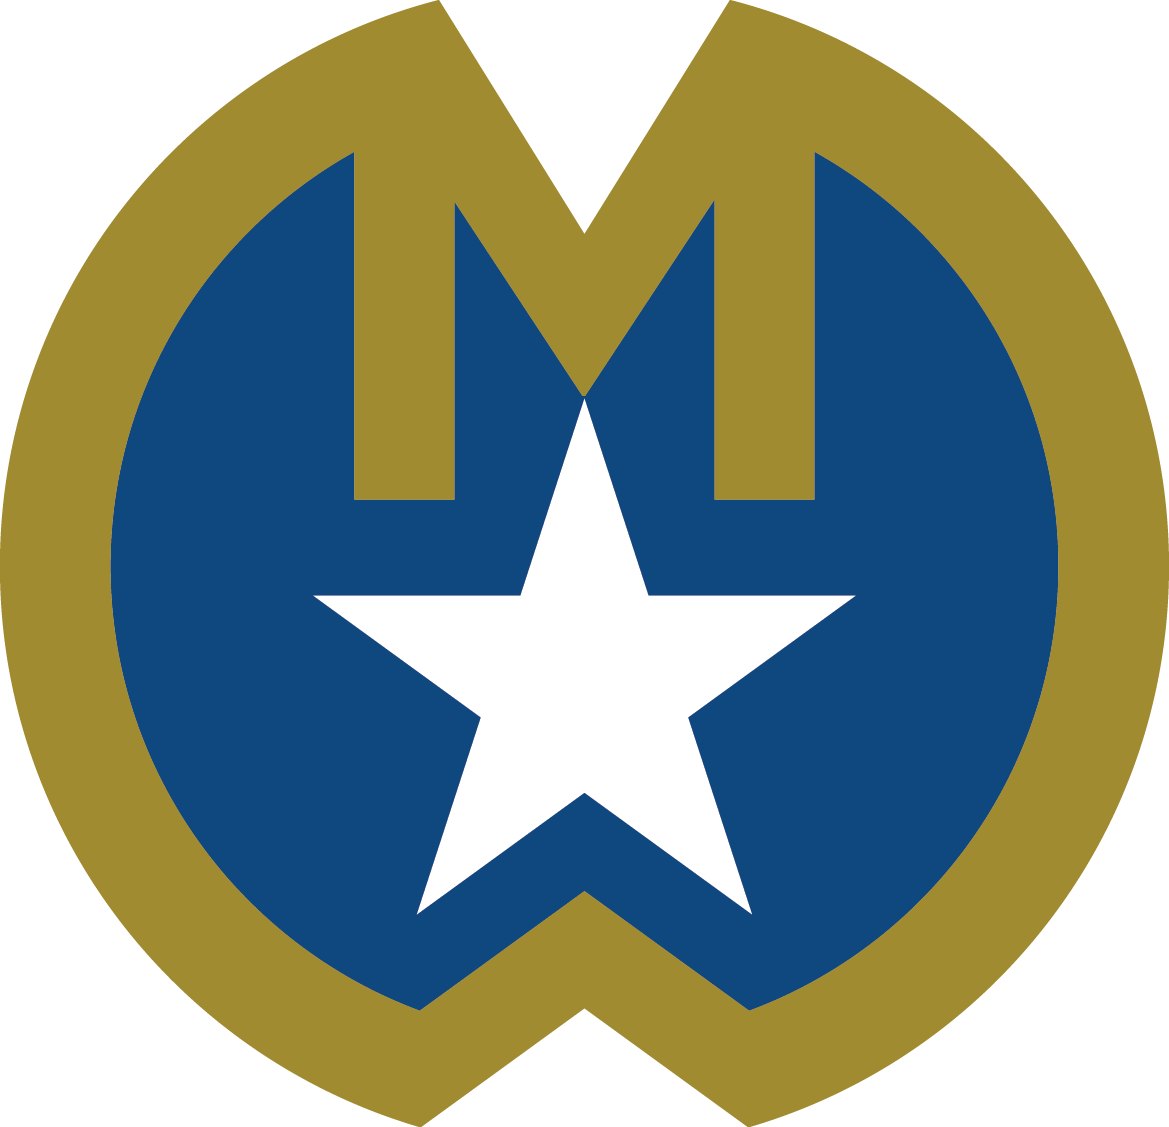 Medallion program logo